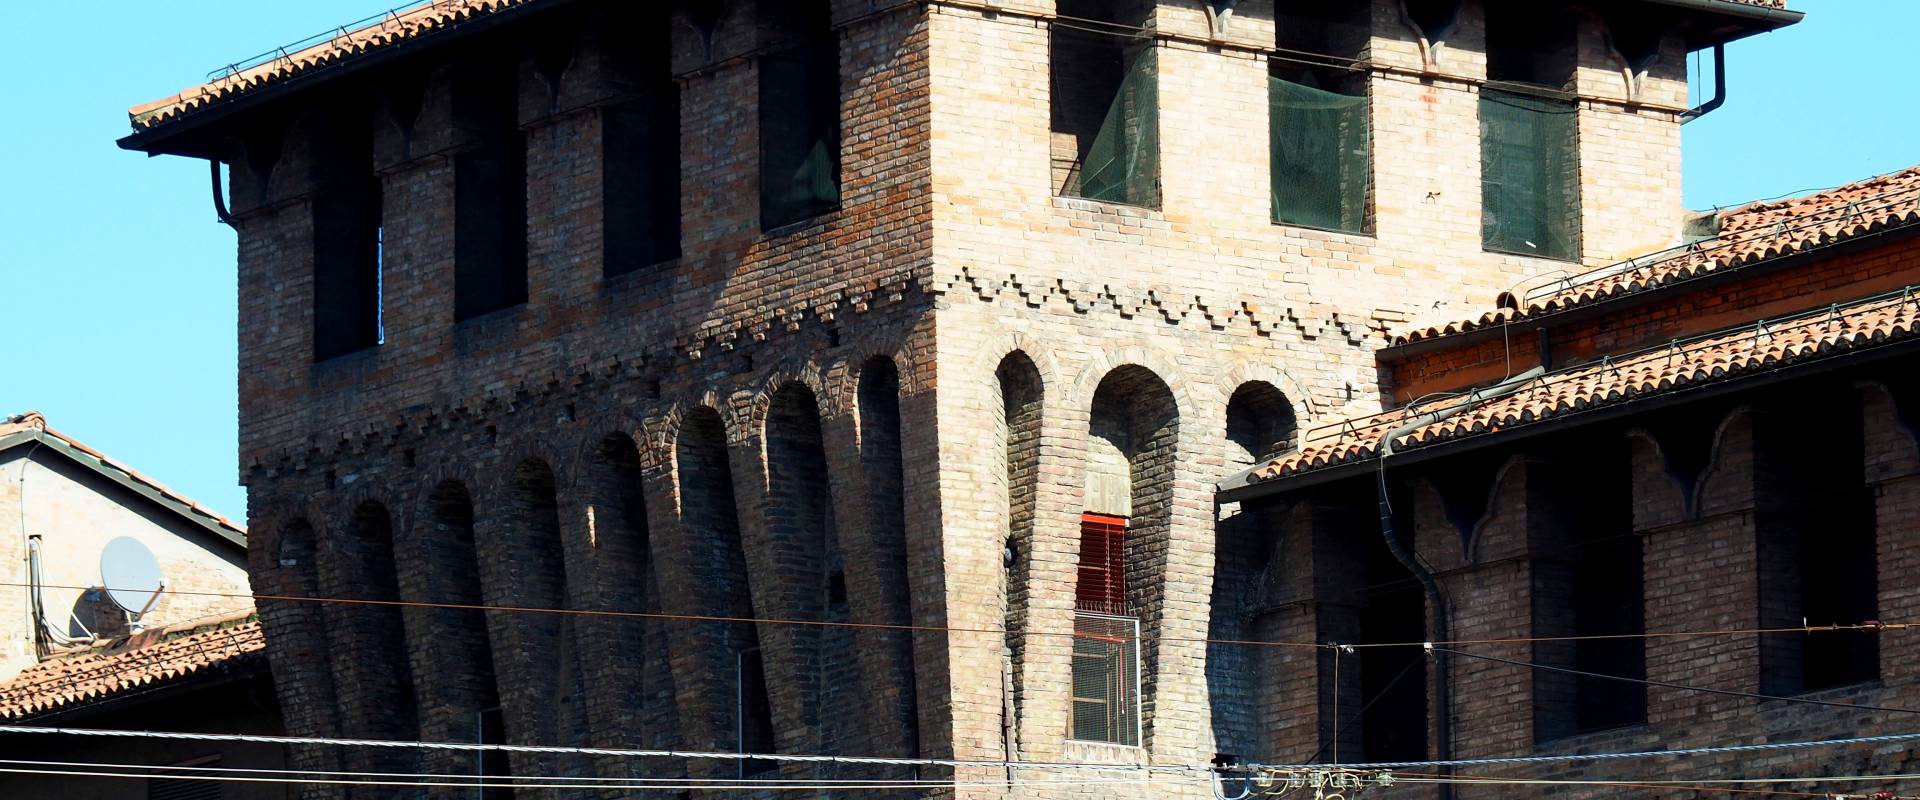 Palazzo comunale - Torrione medievale foto di MarkPagl